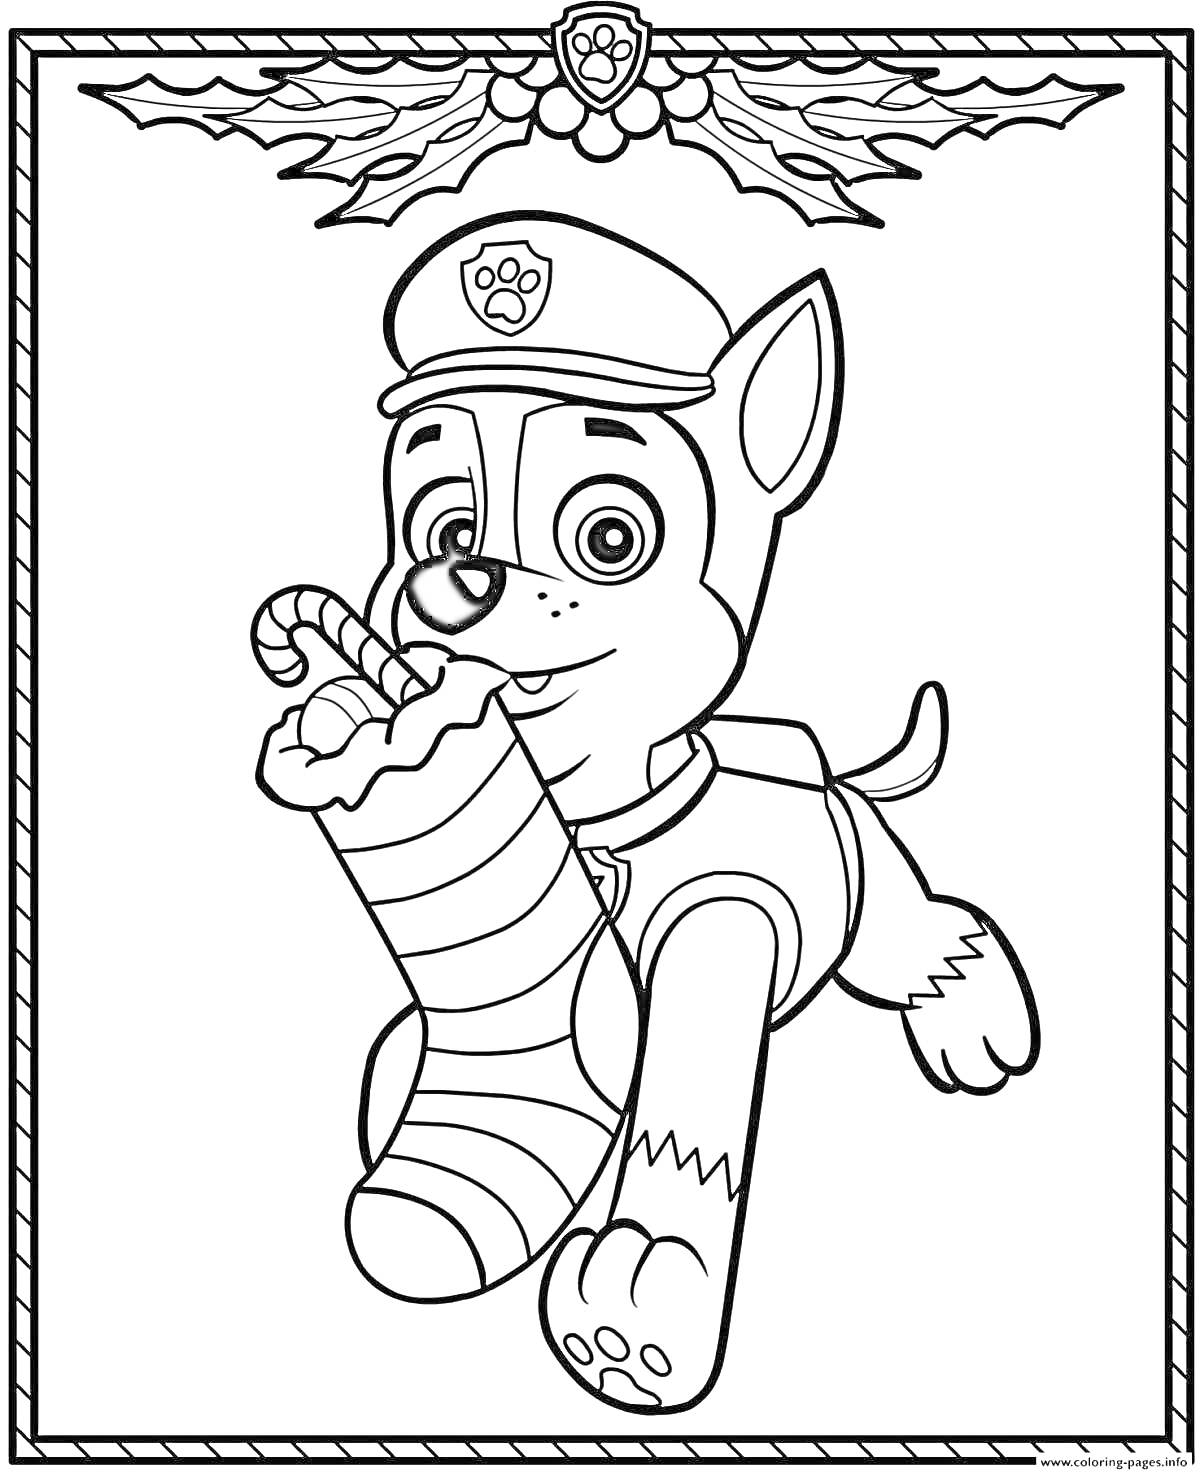 Раскраска Щенок-гонщик из щенячьего патруля с новогодним чулком и конфетой, ветки с листочками и ягодами на углах рамки